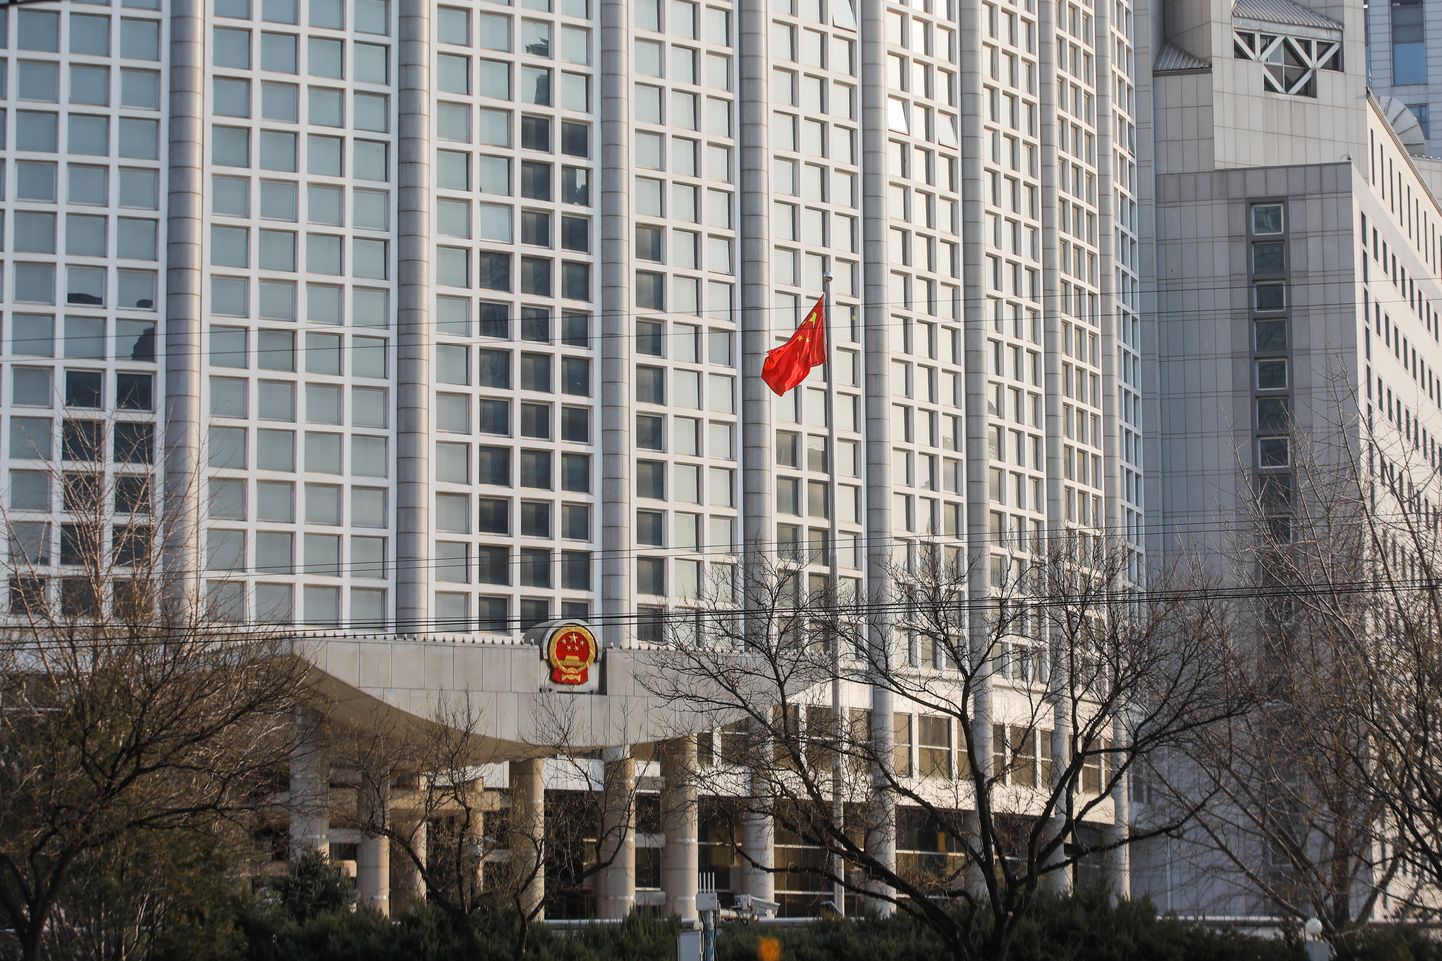 Hiina välisministeerium. Foto on illustratiivne.